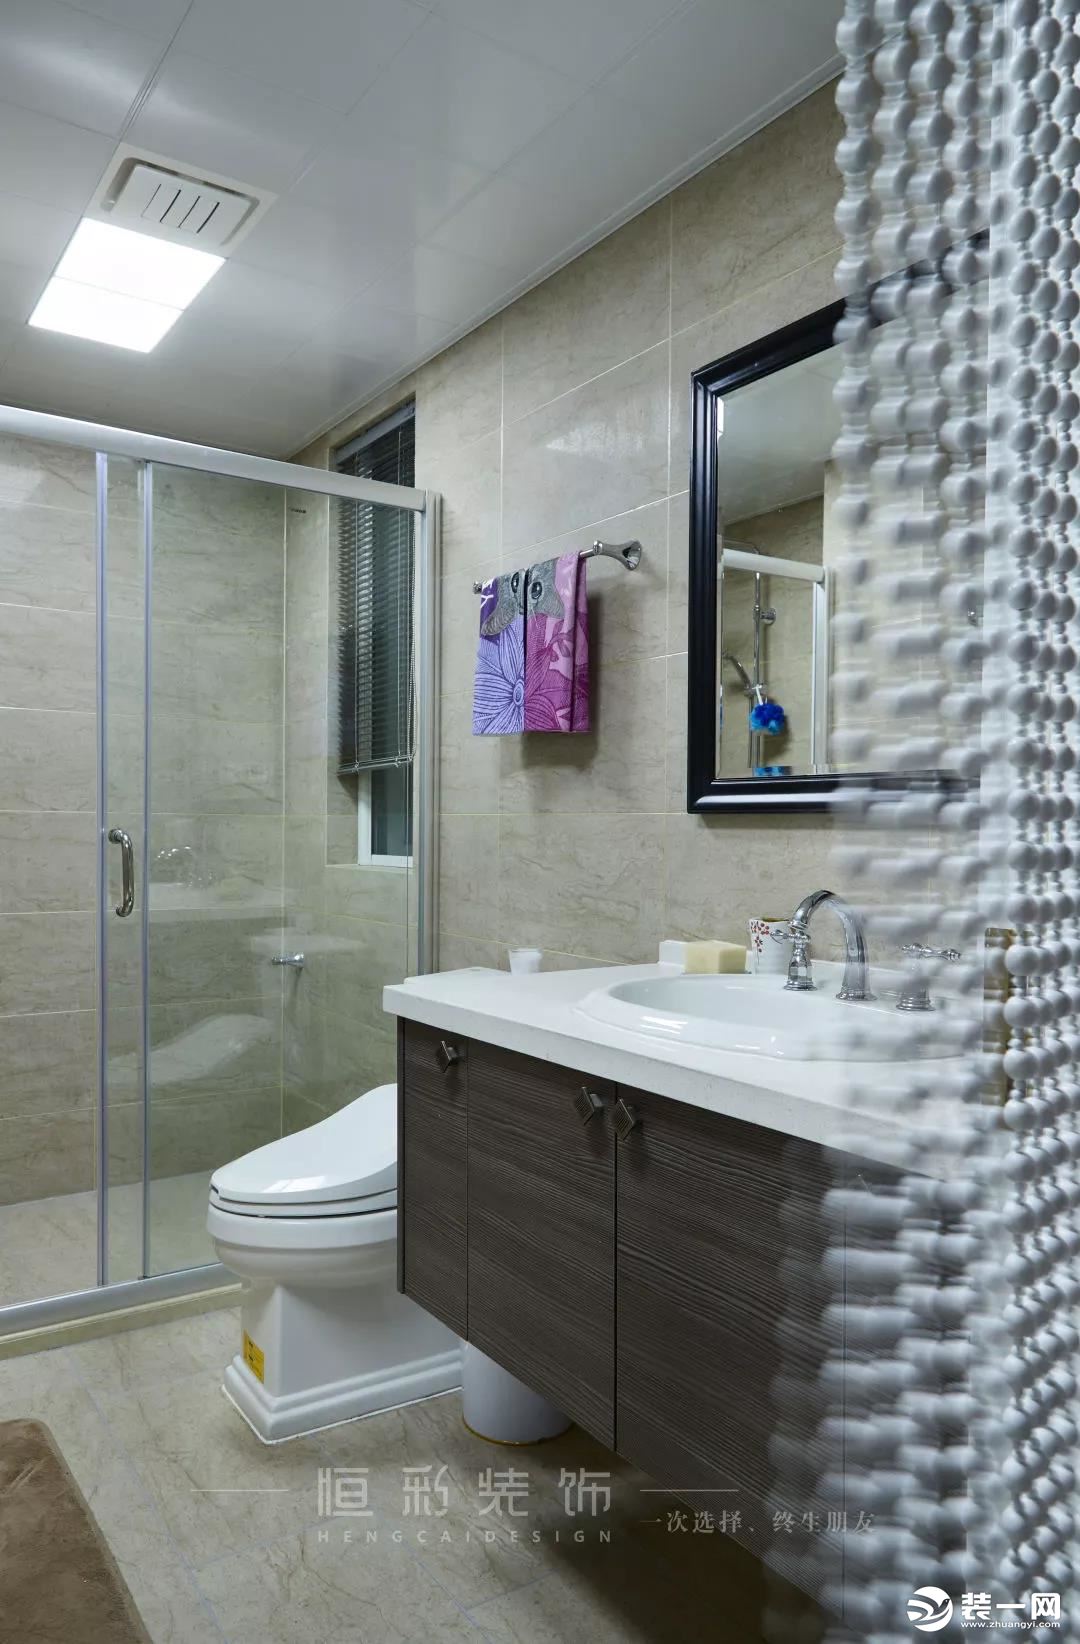 卫生间设计满足功能需求的同时，古典花砖的使用结合浴缸设计，又精于对古典家居艺术的表达。